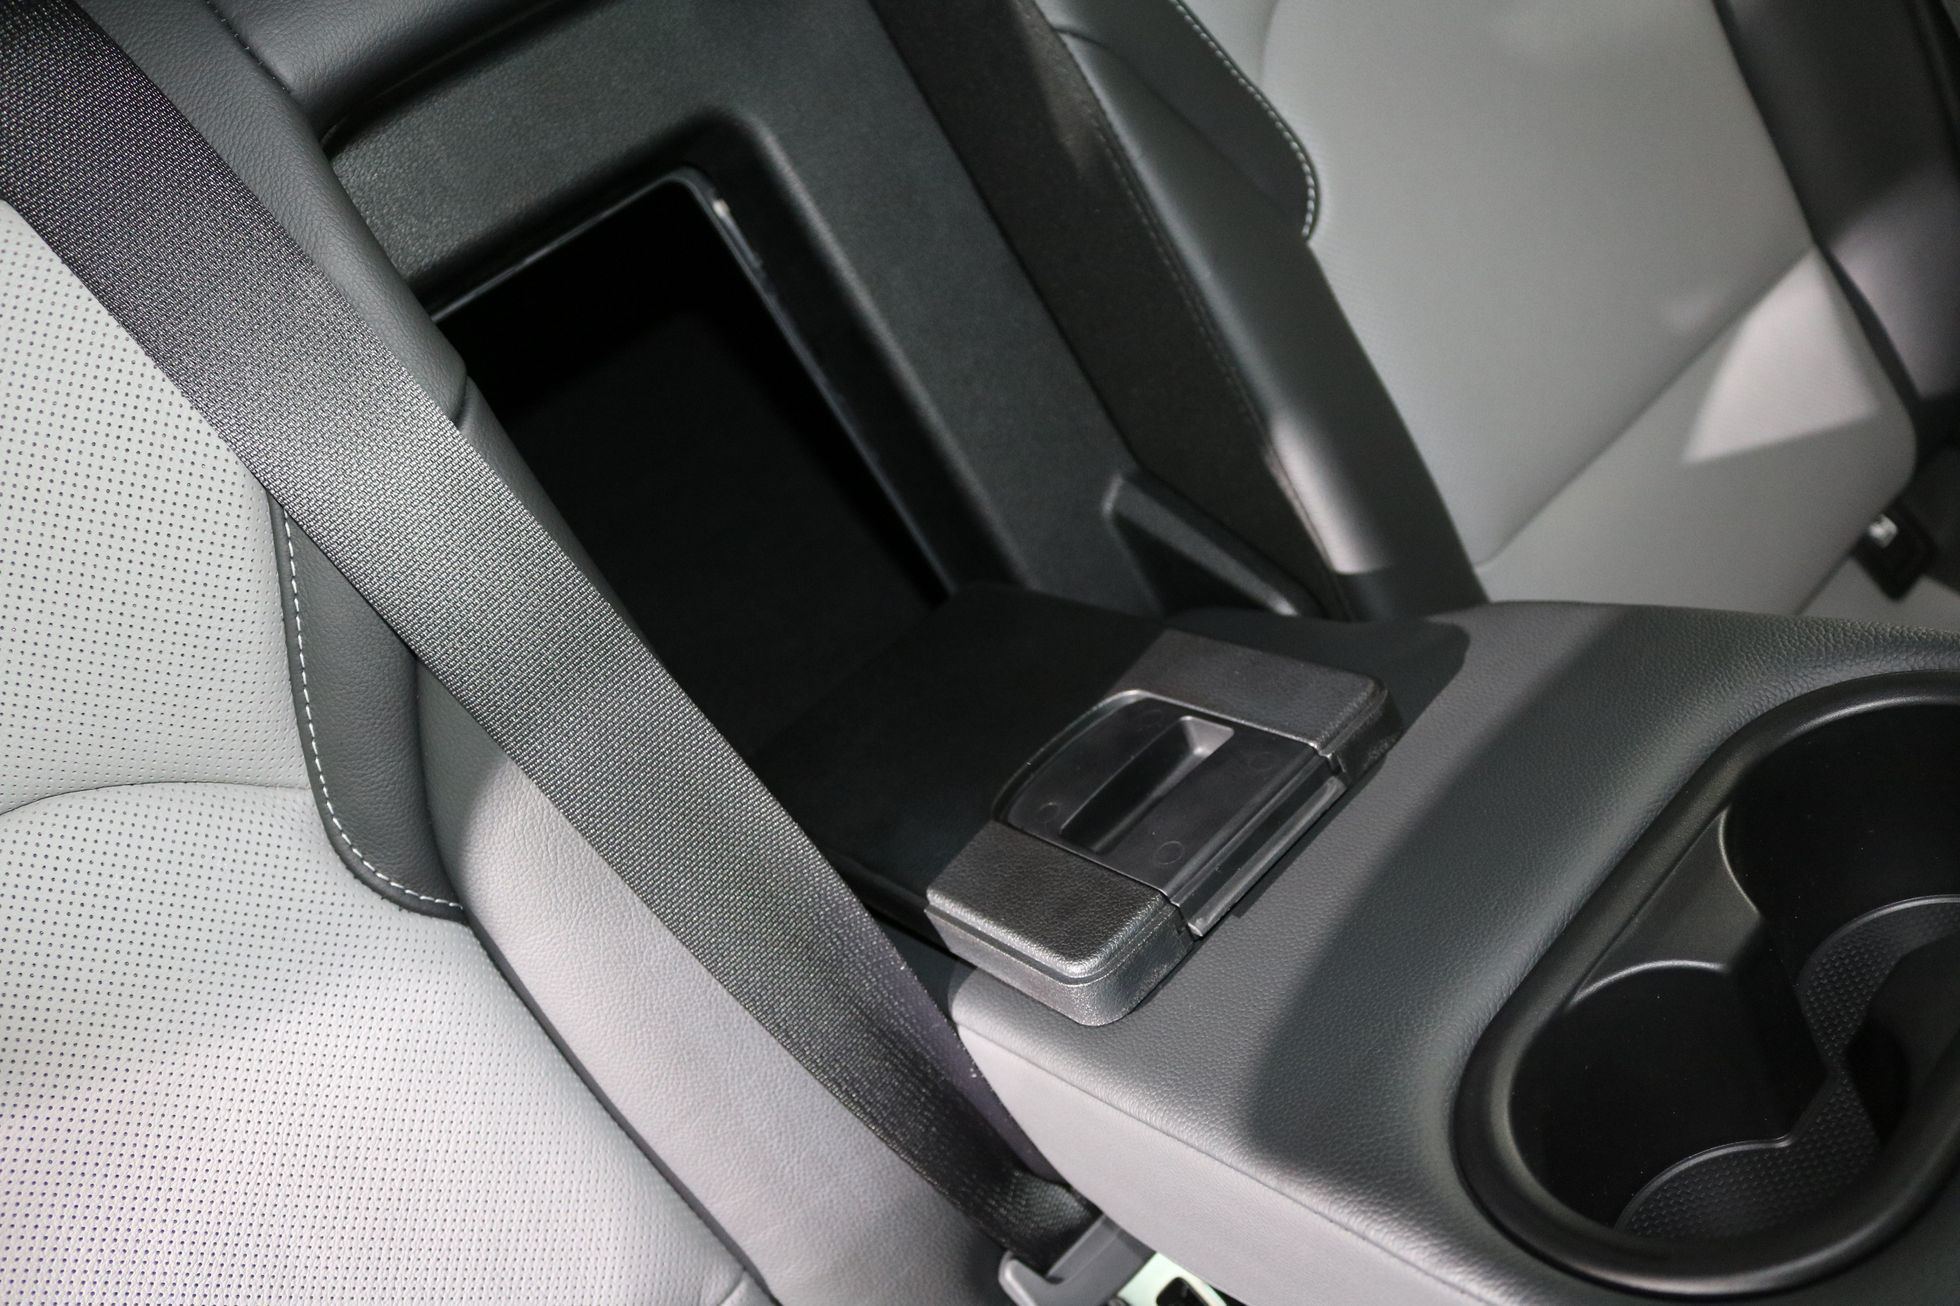 Foto Nový Hyundai i30 detailně. Víme, jak vypadají